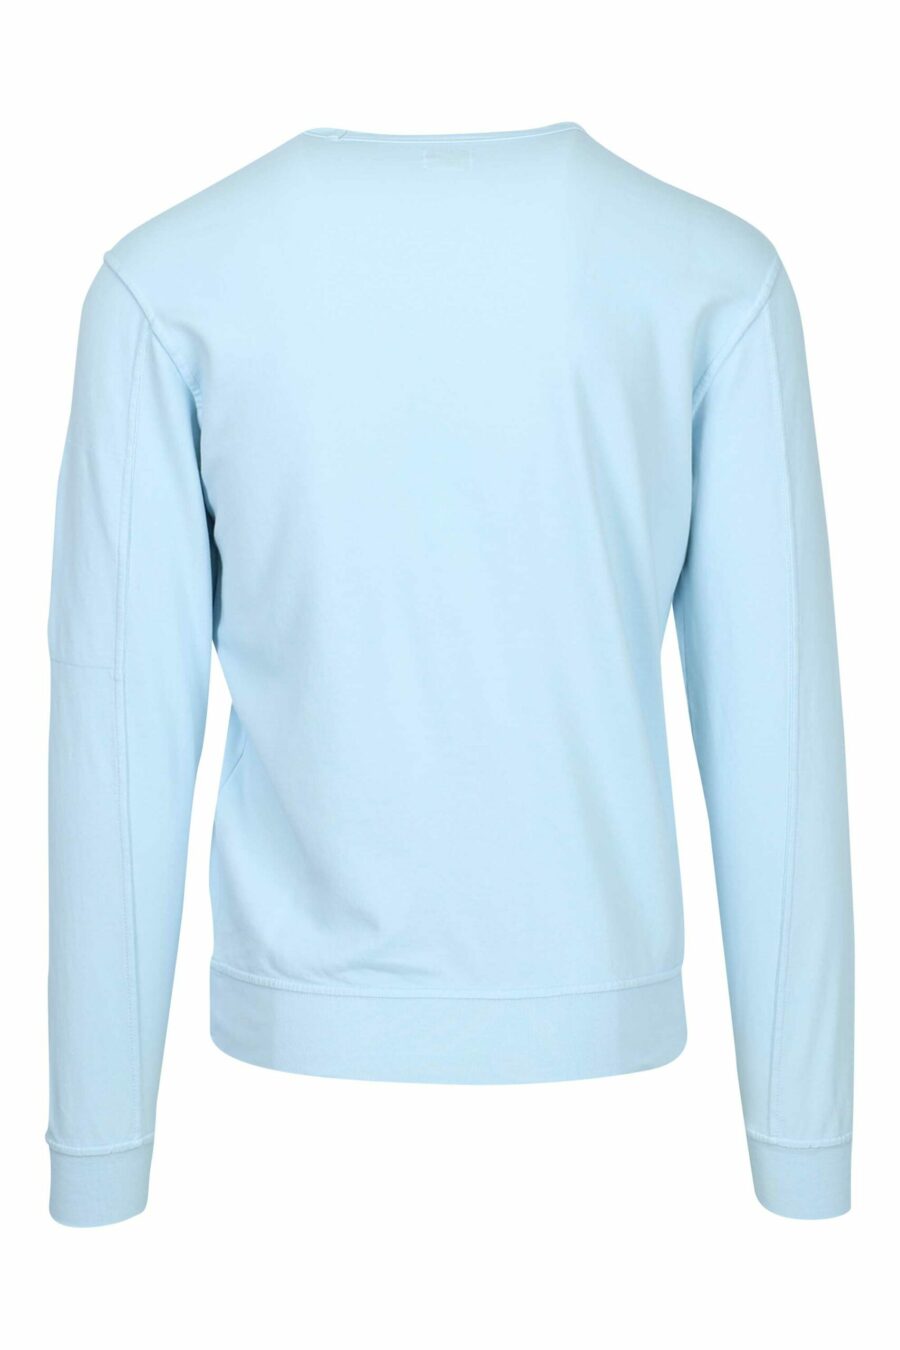 Hellblaues Sweatshirt mit Tasche und Mini-Logo-Linse - 7620943745269 2 skaliert